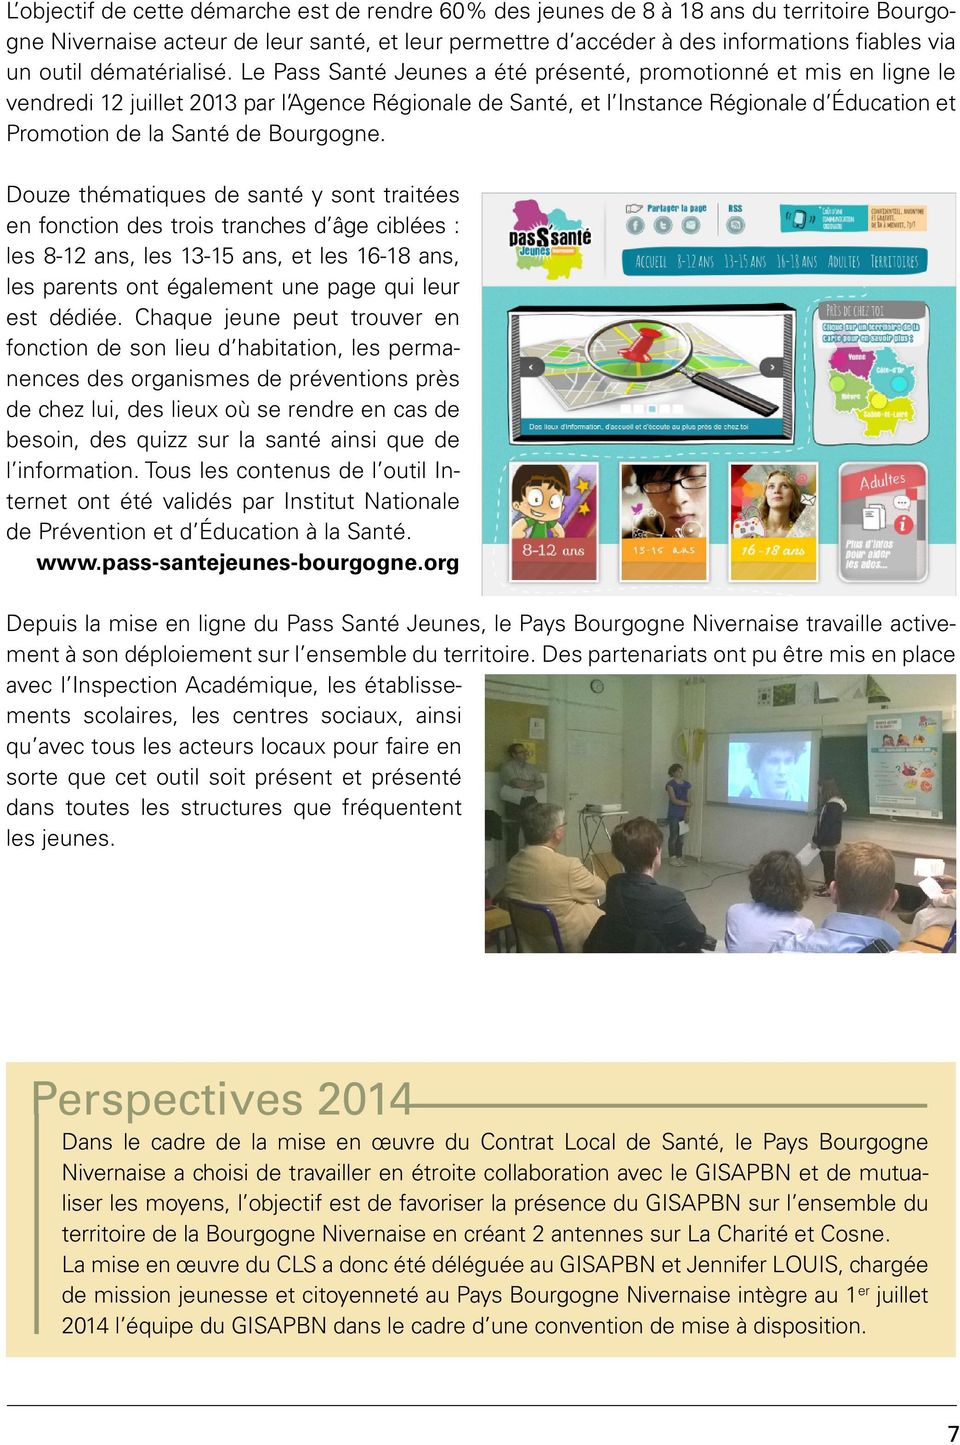 Le Pass Santé Jeunes a été présenté, promotionné et mis en ligne le vendredi 12 juillet 2013 par l Agence Régionale de Santé, et l Instance Régionale d Éducation et Promotion de la Santé de Bourgogne.